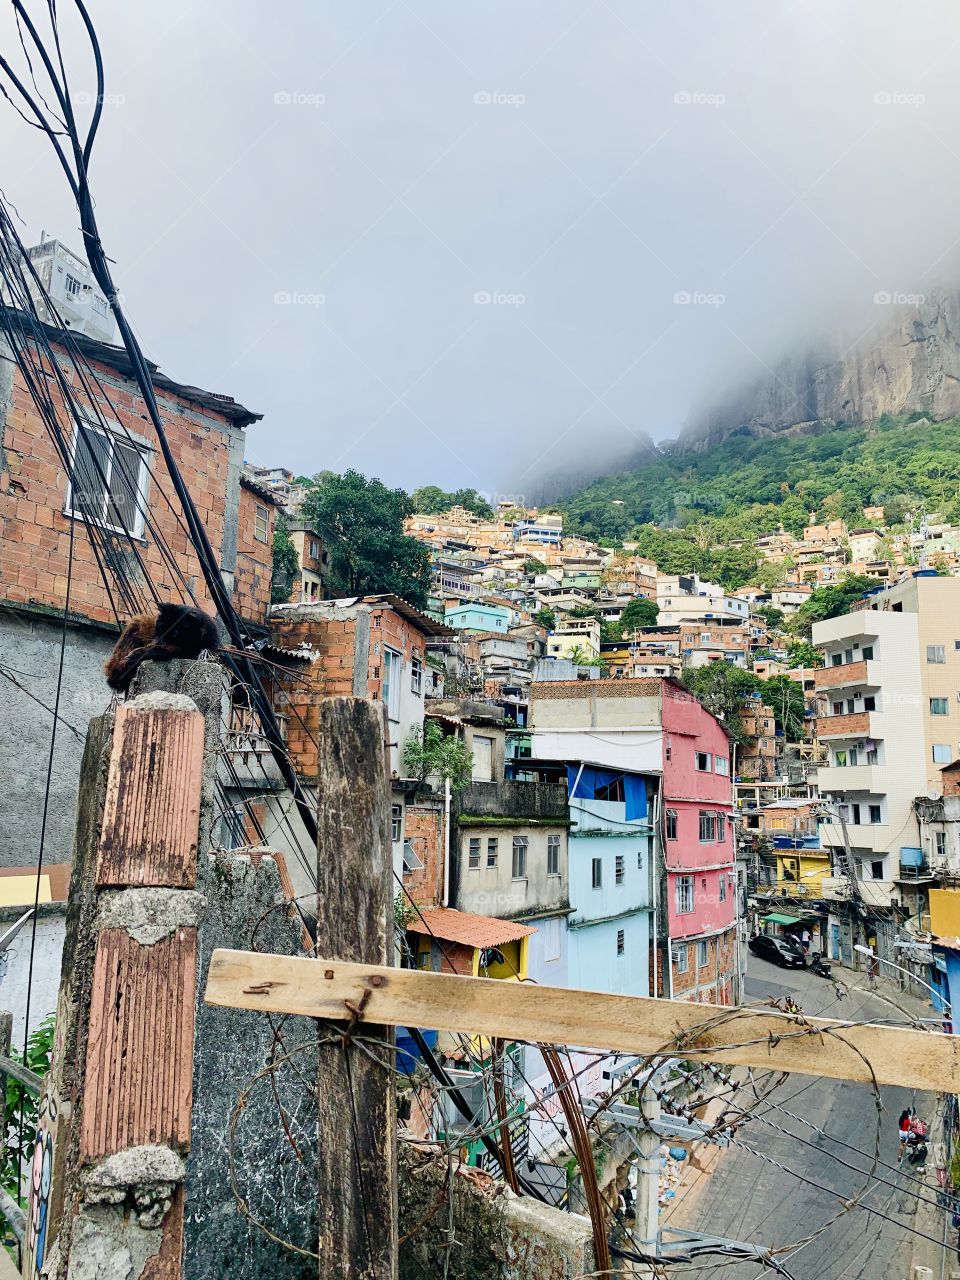 Rio de Janeiro - Favela 